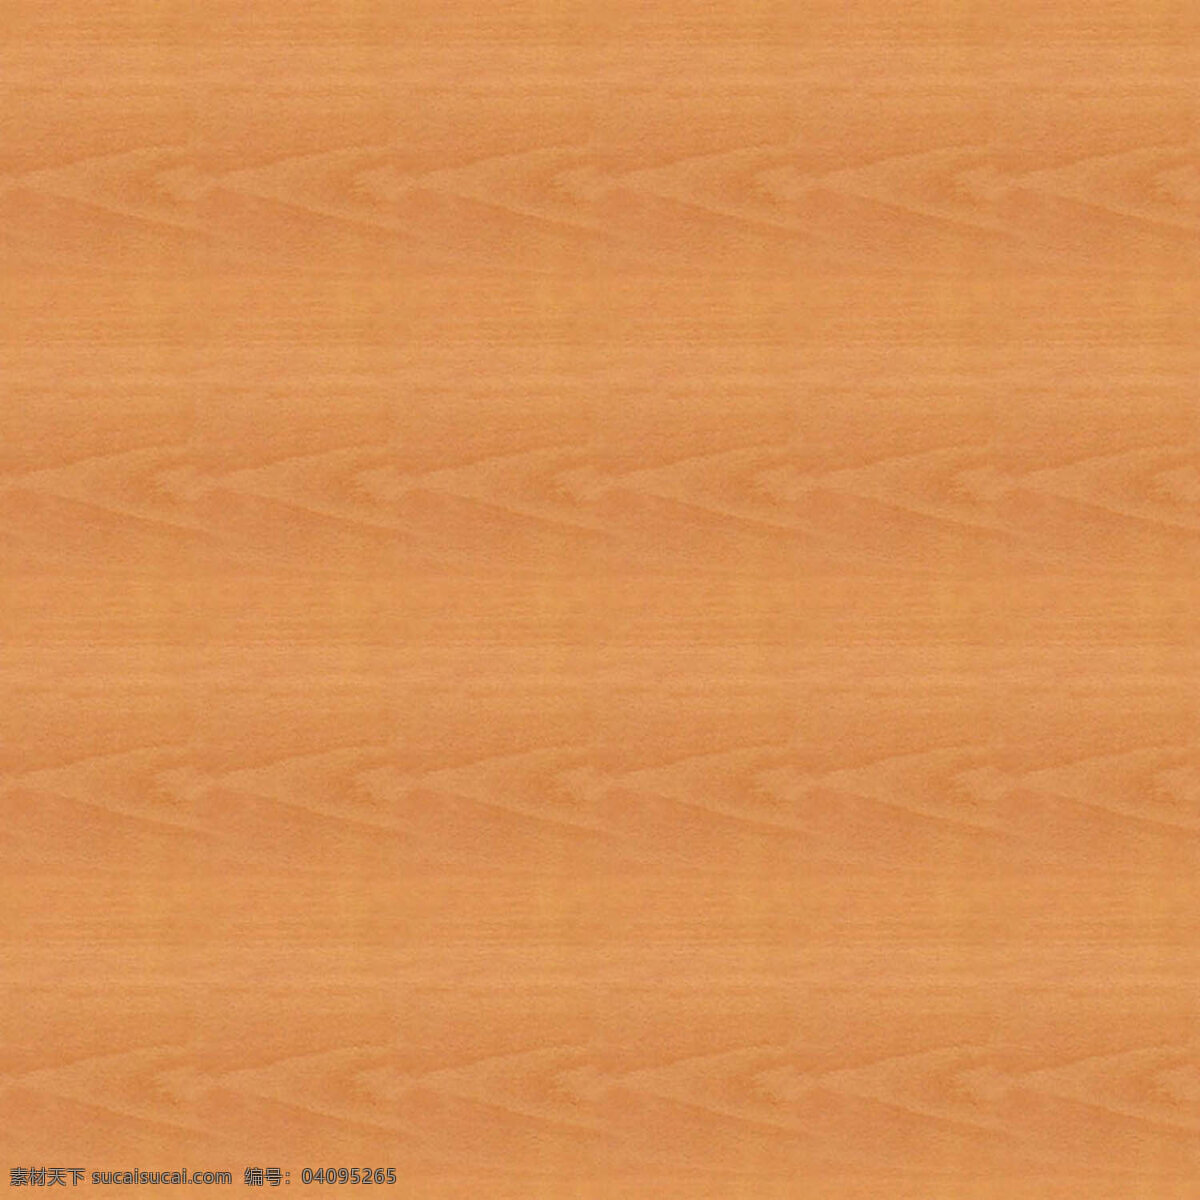 木质 纹理 木纹 纹理素材 纹路背景 棕色 木纹纹理图片 背景图片